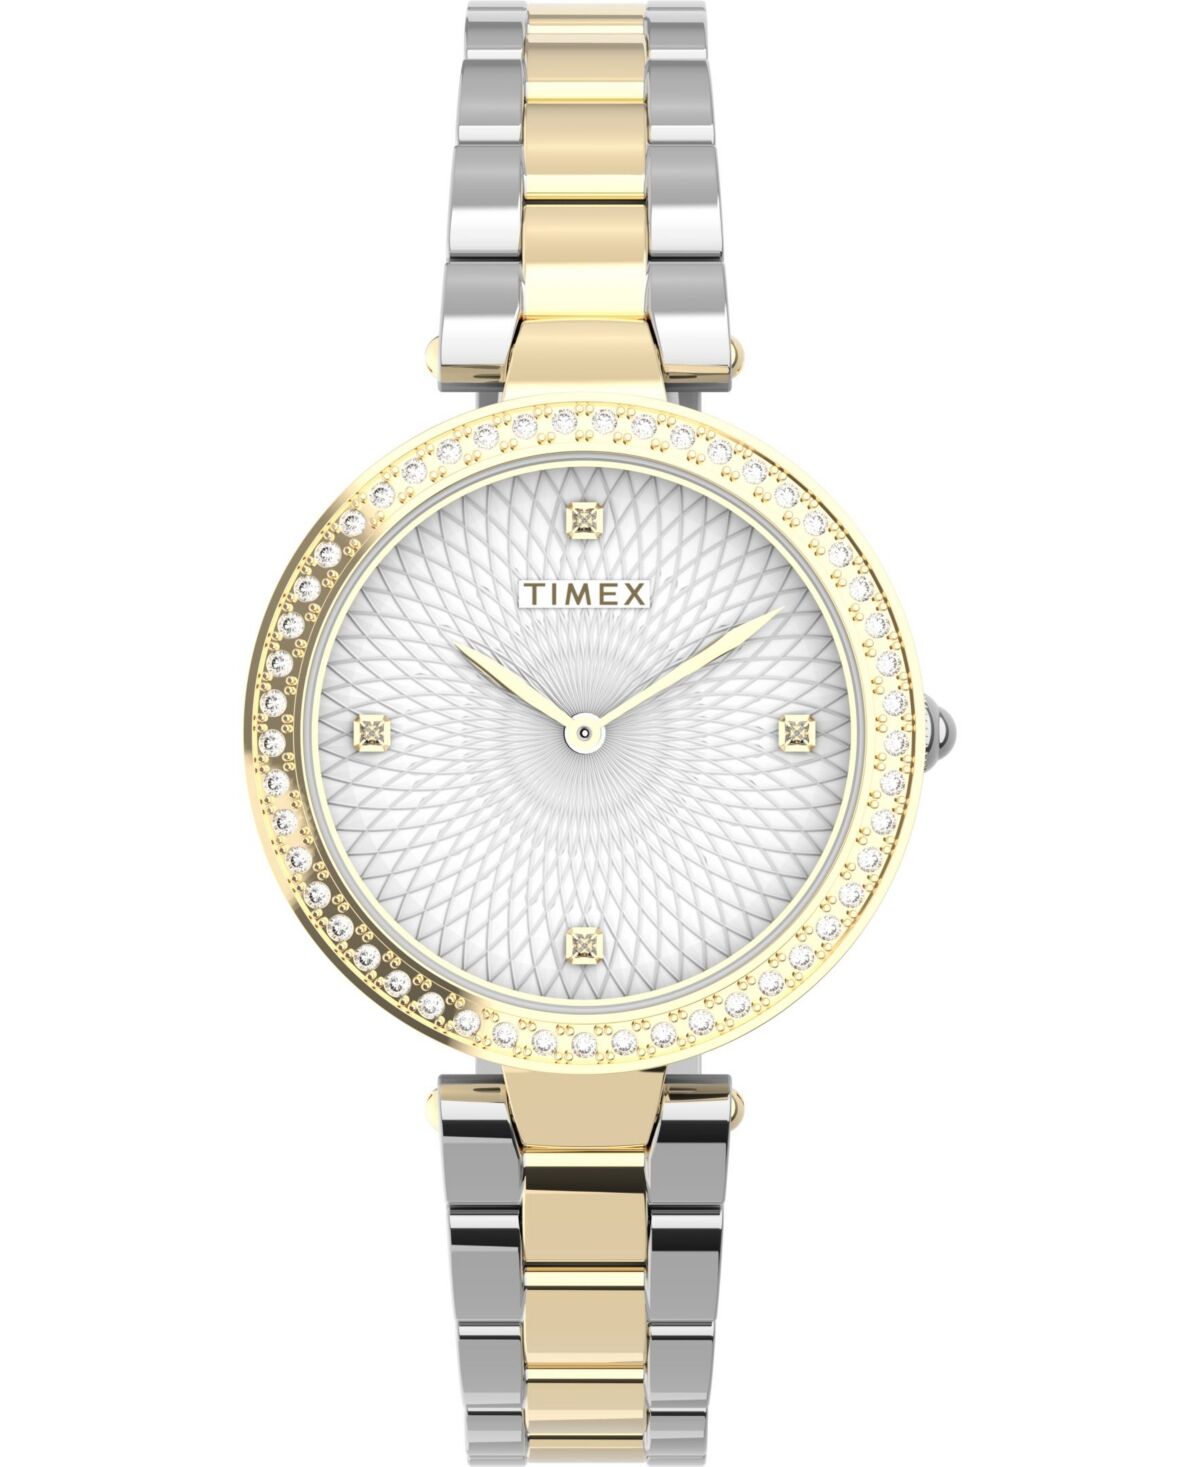 Timex Women's City Two-Tone Low Lead Brass Bracelet Watch 32mm - Two-Tone